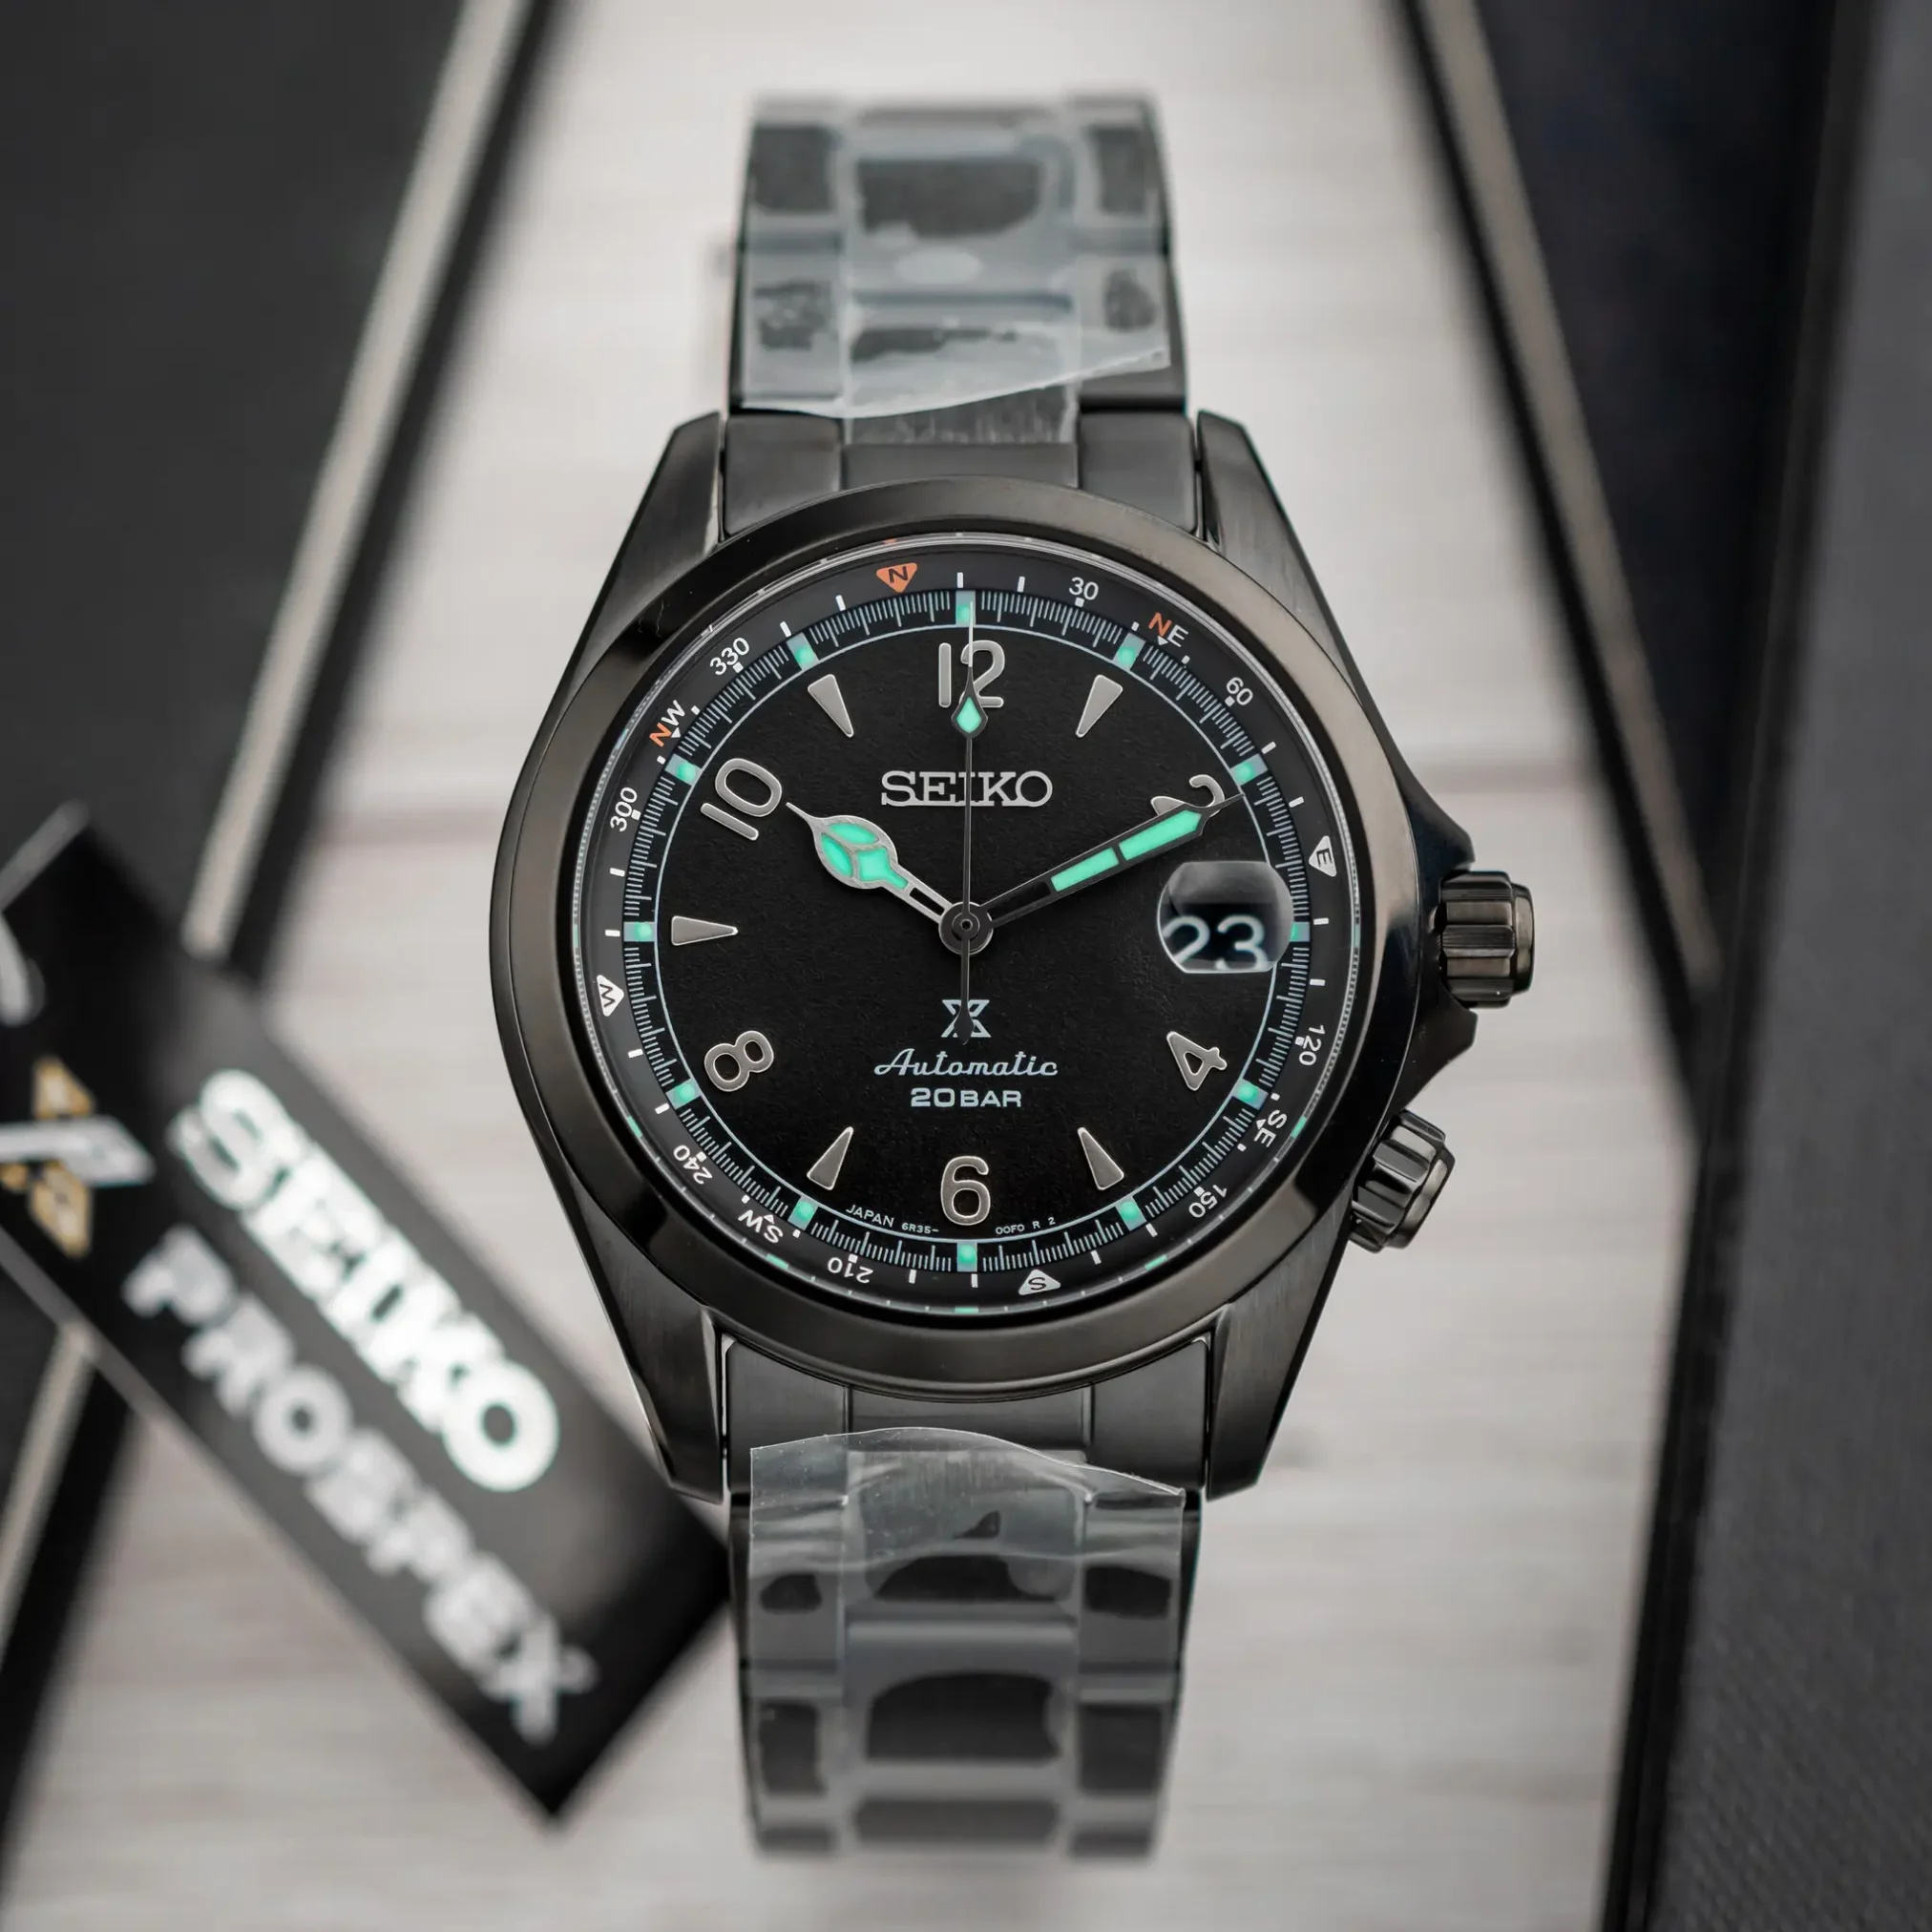 Đồng hồ Seiko Prospex Alpinist The Black Series Limited Edition SBDC185 (SPB337) với mặt số màu đen. Dây đeo bằng thép. Thân vỏ bằng thép.